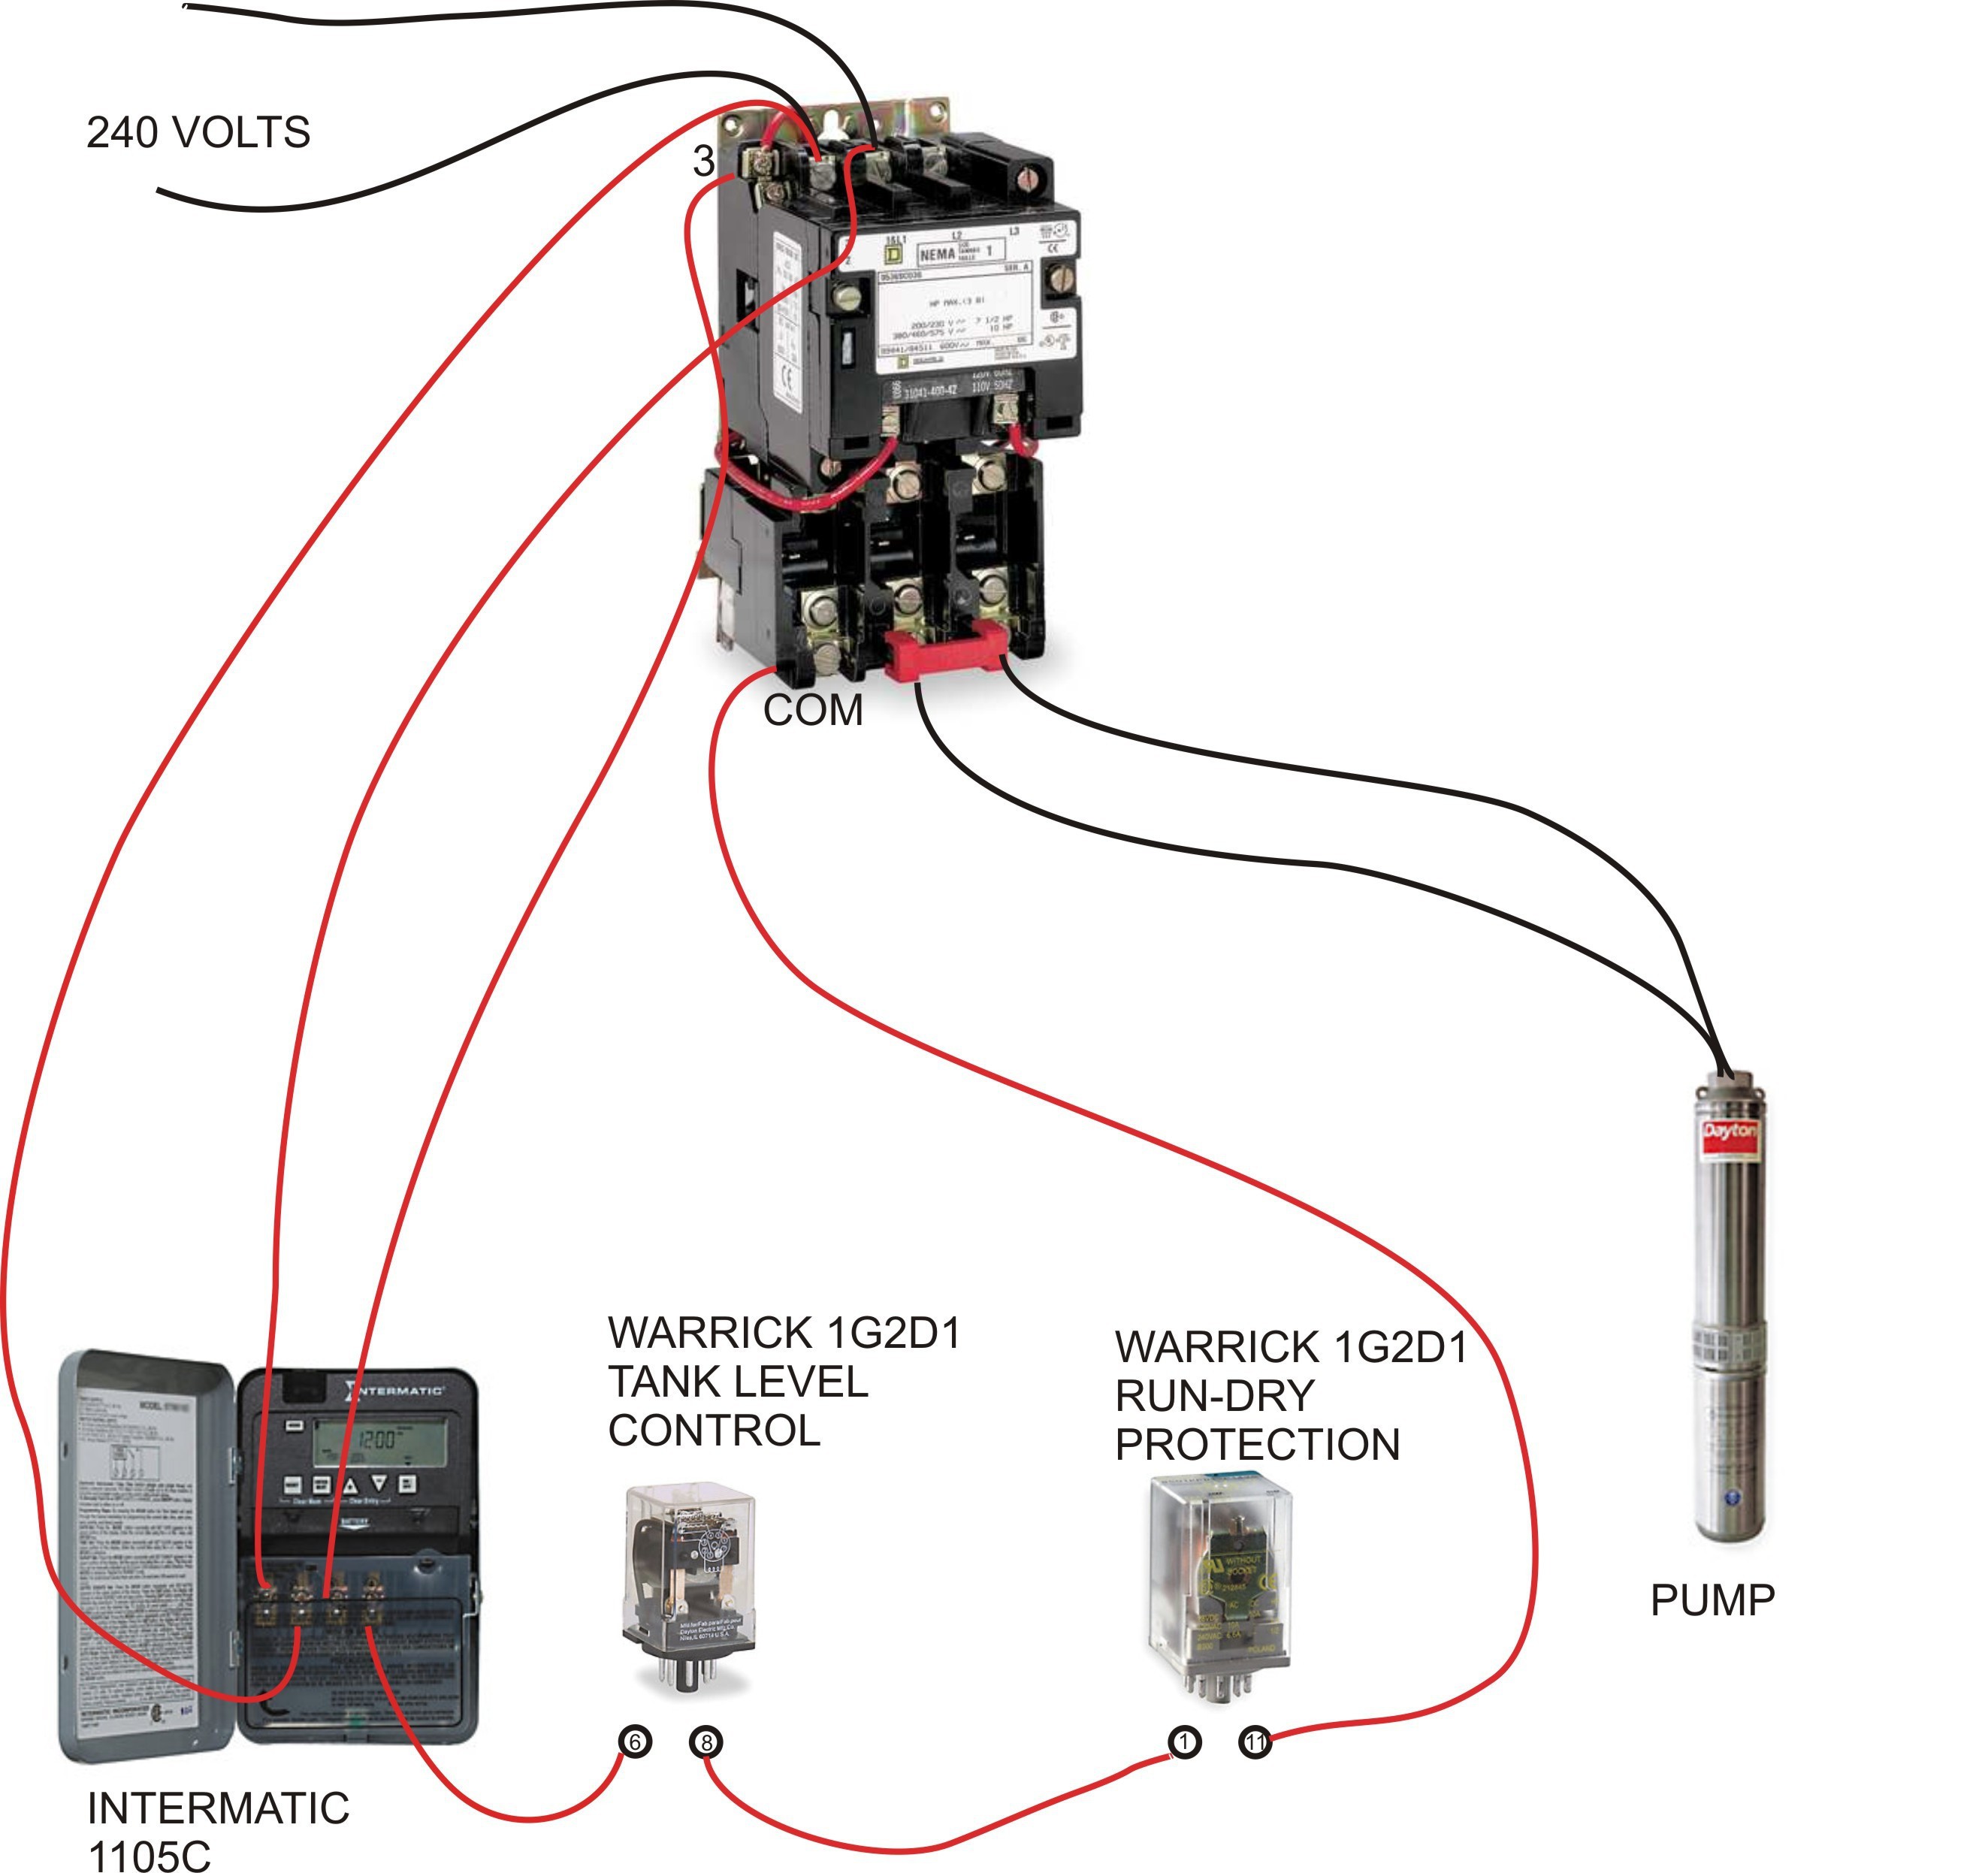 Square D Air pressor Pressure Switch Wiring Diagram Refrence Air Pressor Wiring Diagram Best Square D